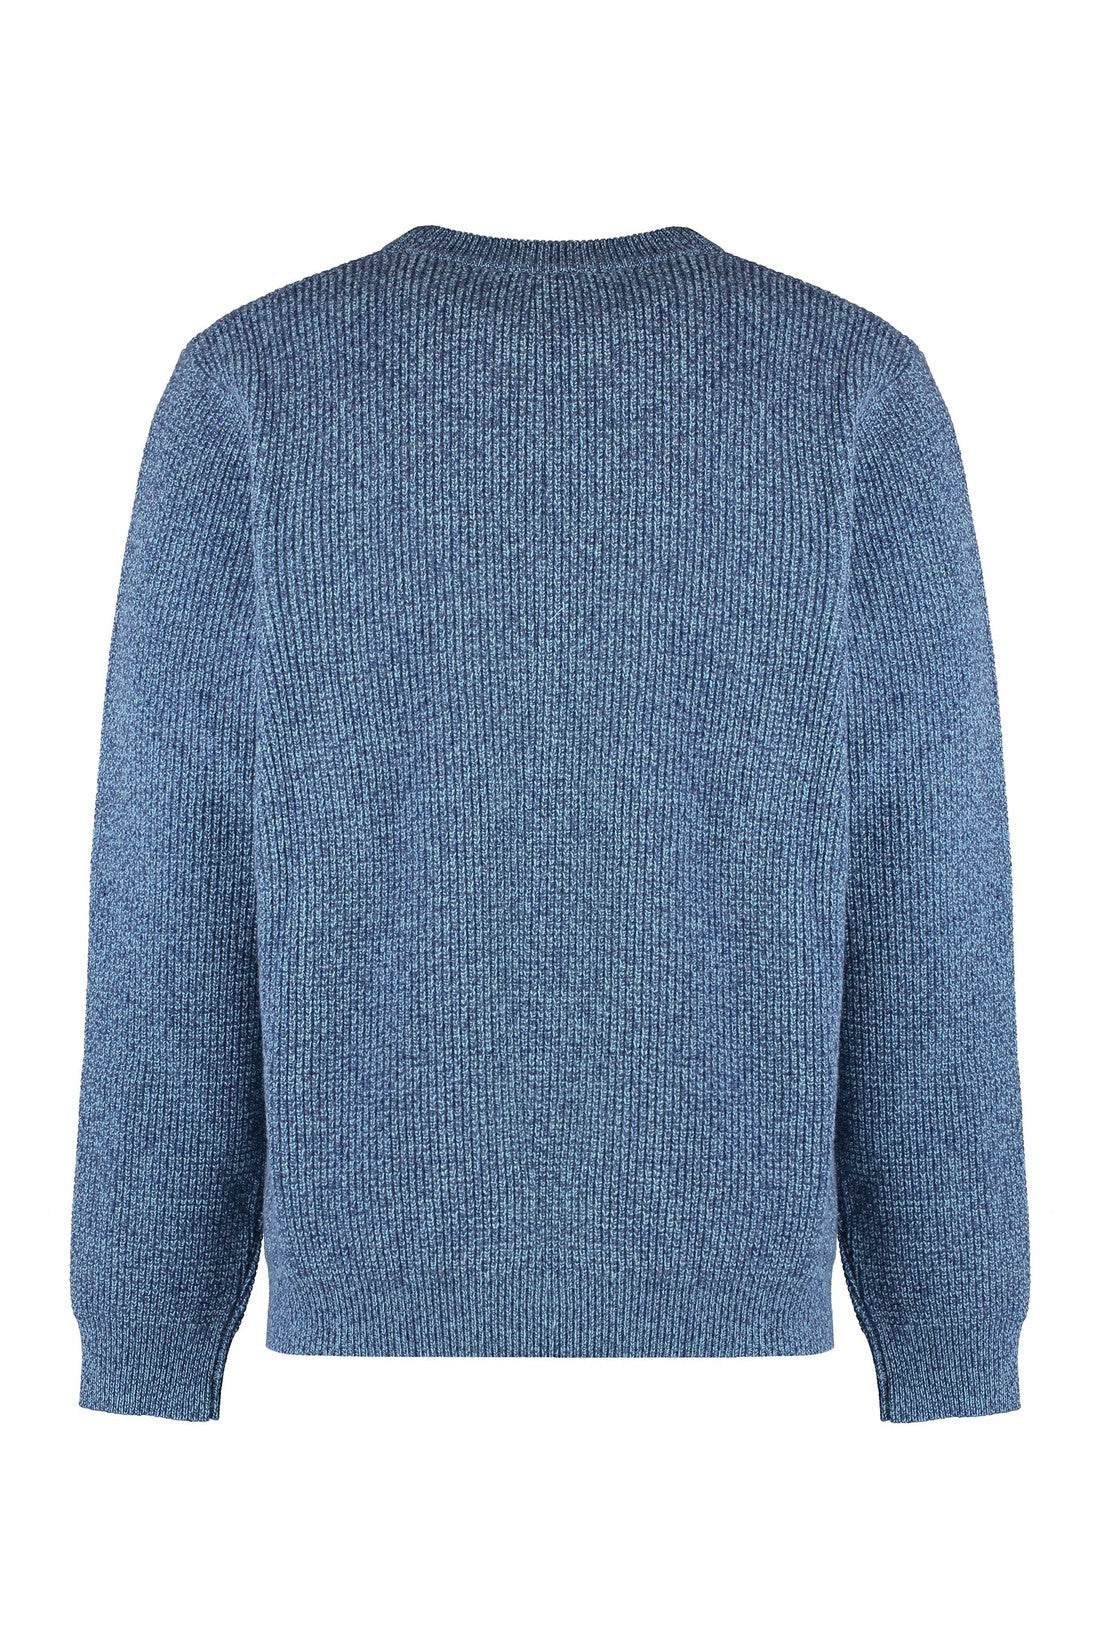 Maison Kitsuné-OUTLET-SALE-Crew-neck wool sweater-ARCHIVIST